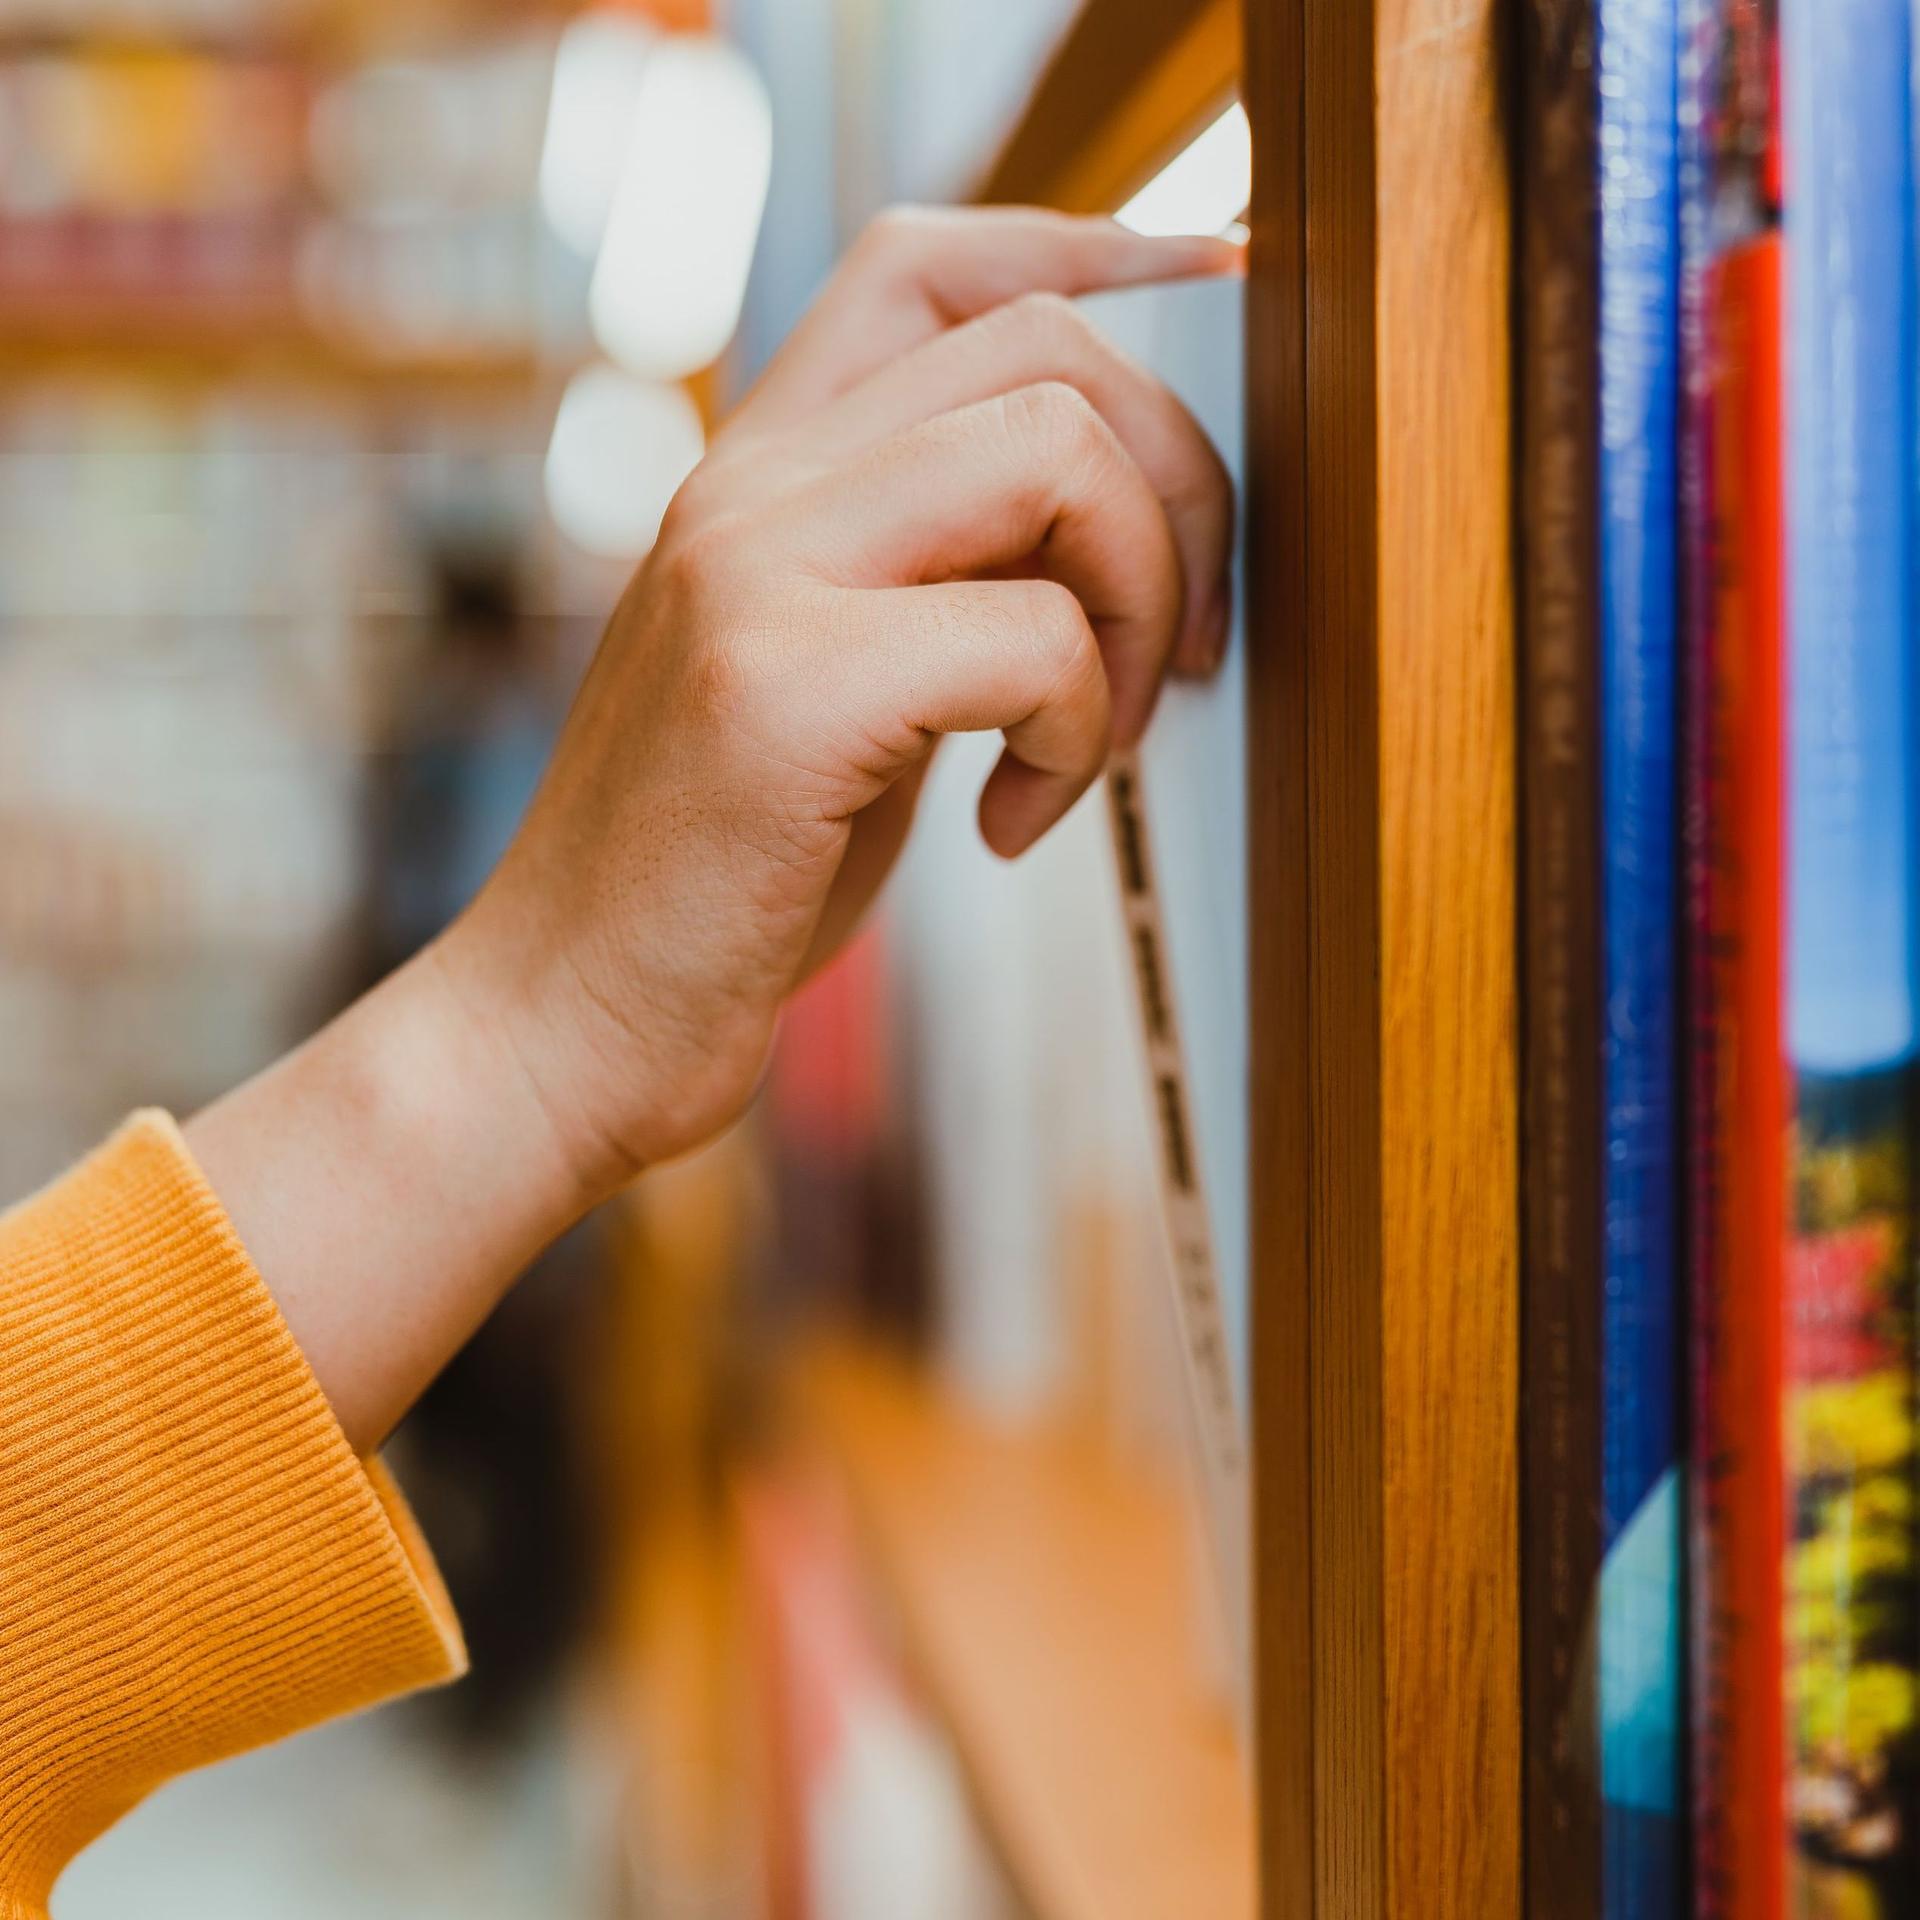 Seitliche Nahaufnahme von einem Arm mit orangefarbenen Pullover. Die Hand zieht ein Buch aus einem Bücherregal.